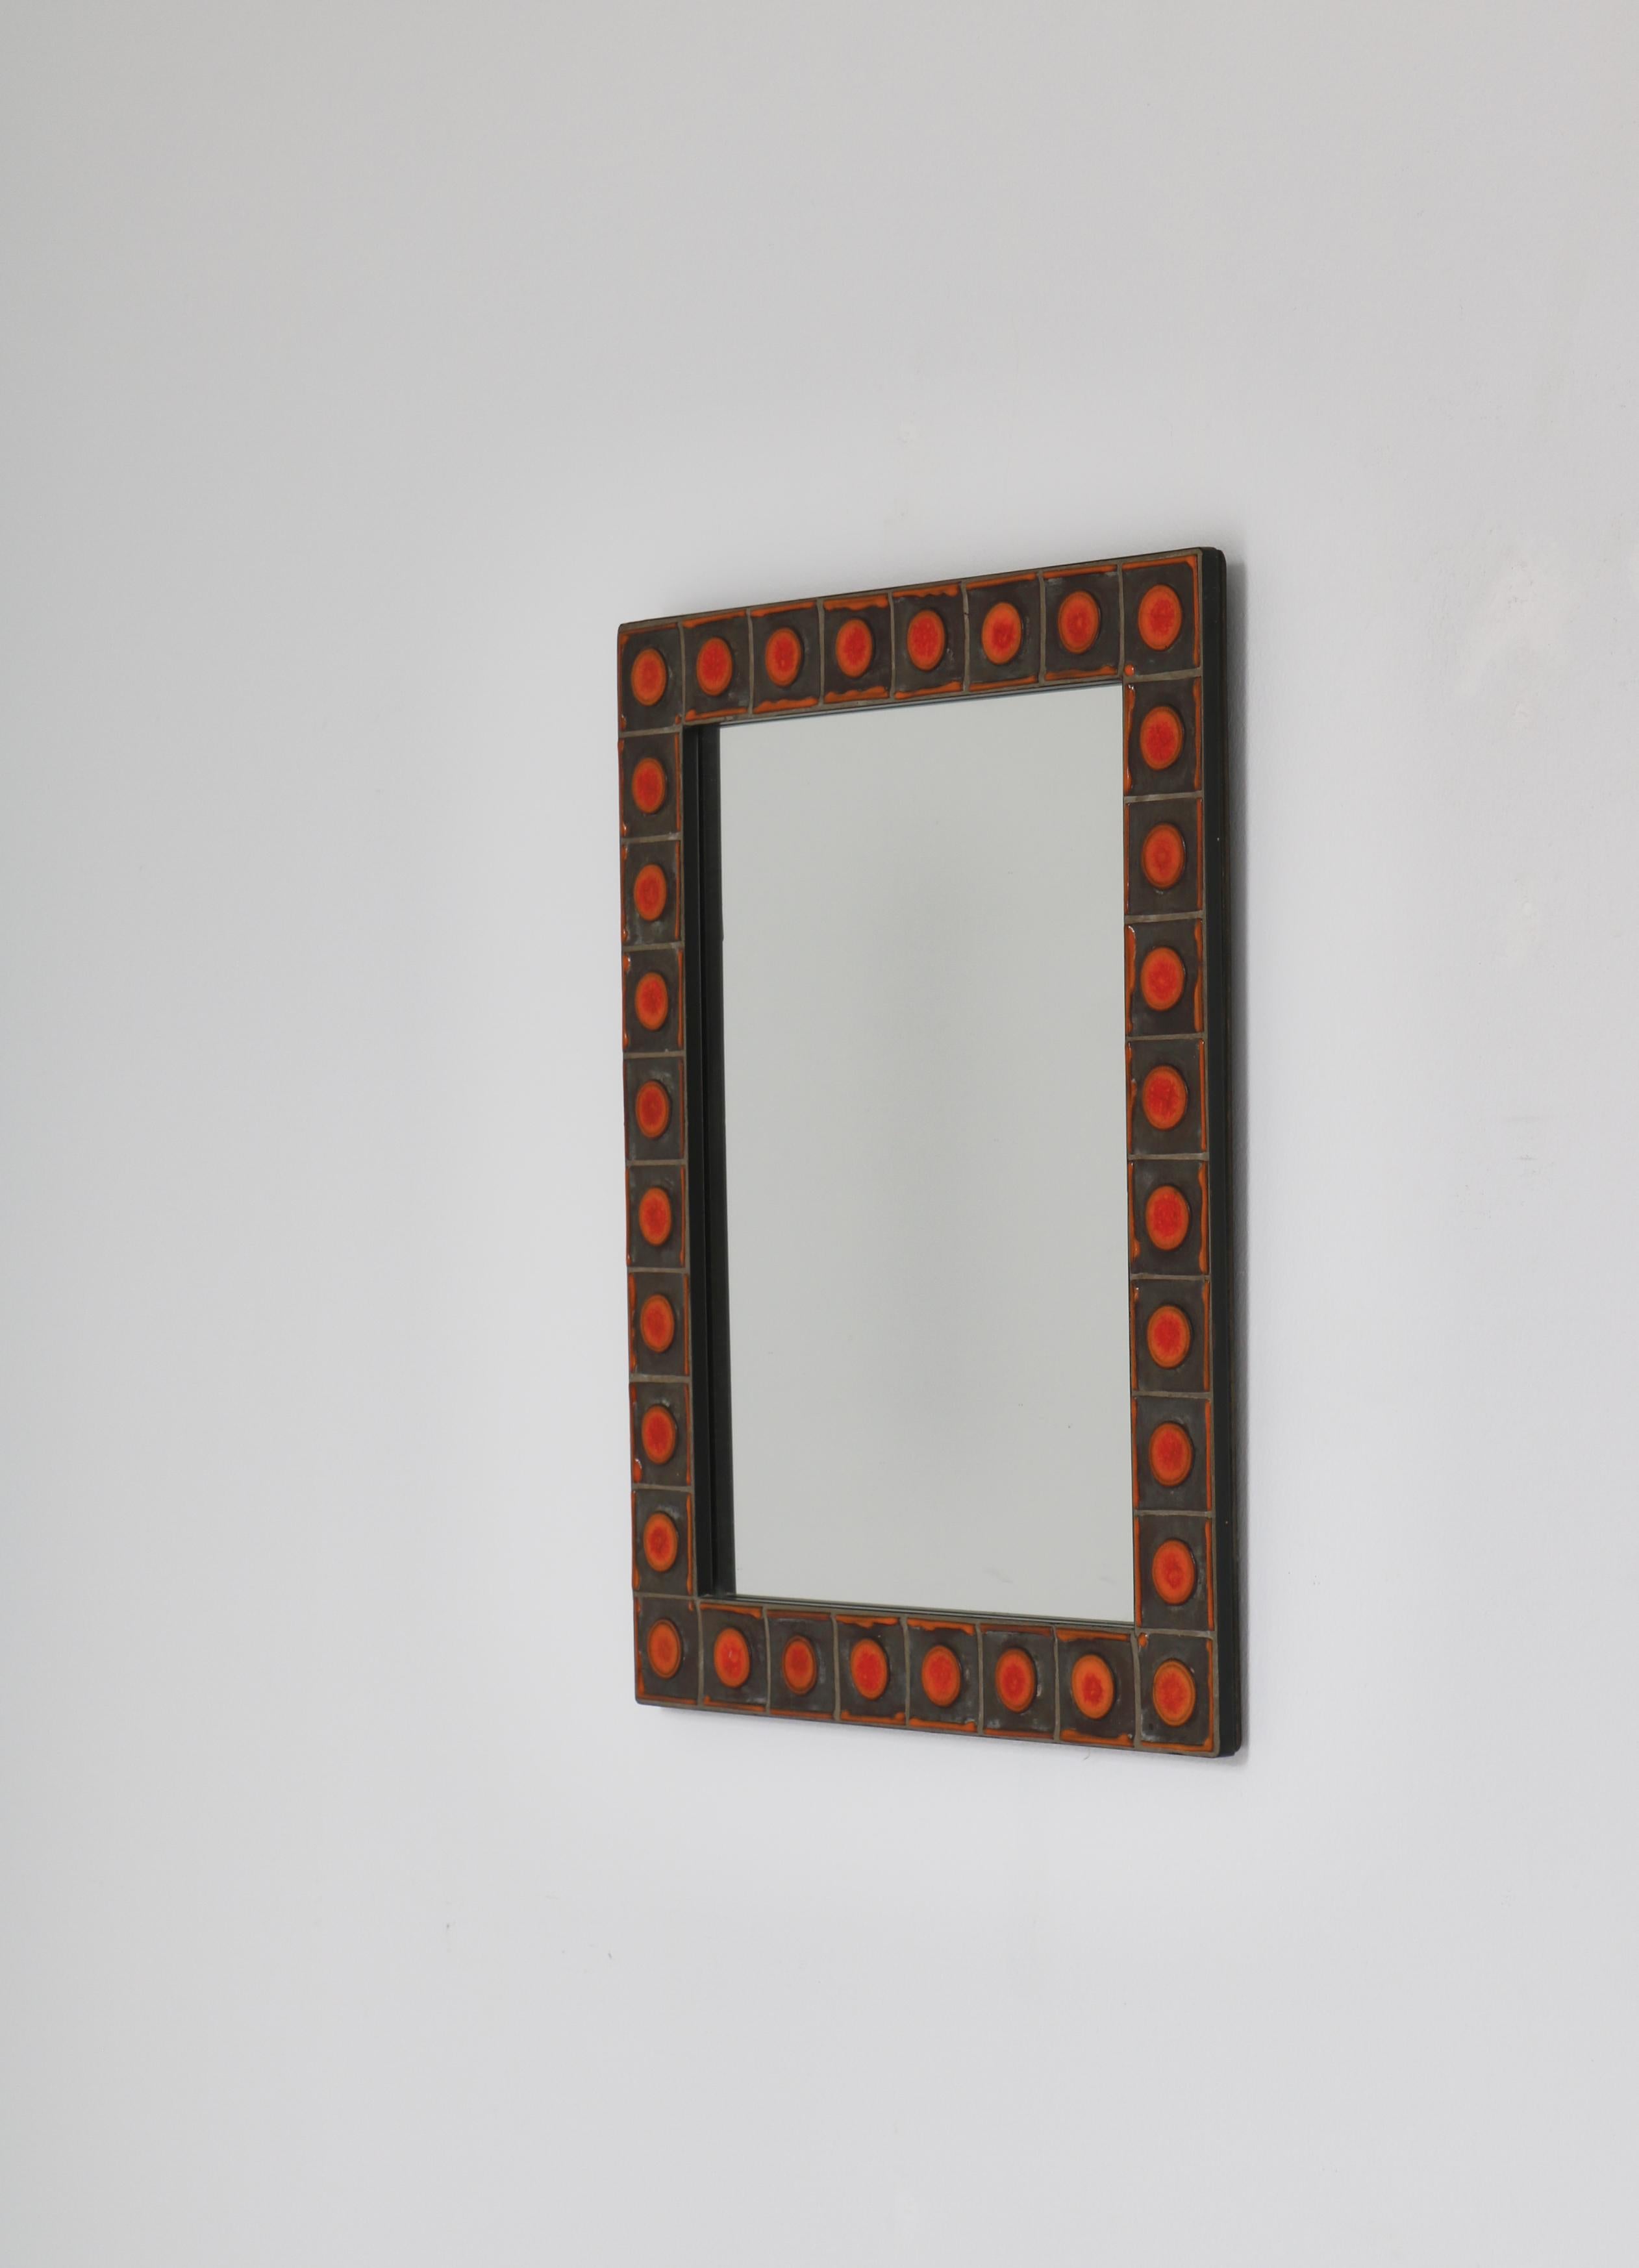 Schöner Wandspiegel mit orangefarbenen Keramikfliesen  von Dietlinde Hein in den 1960er Jahren. Der Spiegel wurde von der Keramikwerkstatt Knabstrup in Dänemark hergestellt.